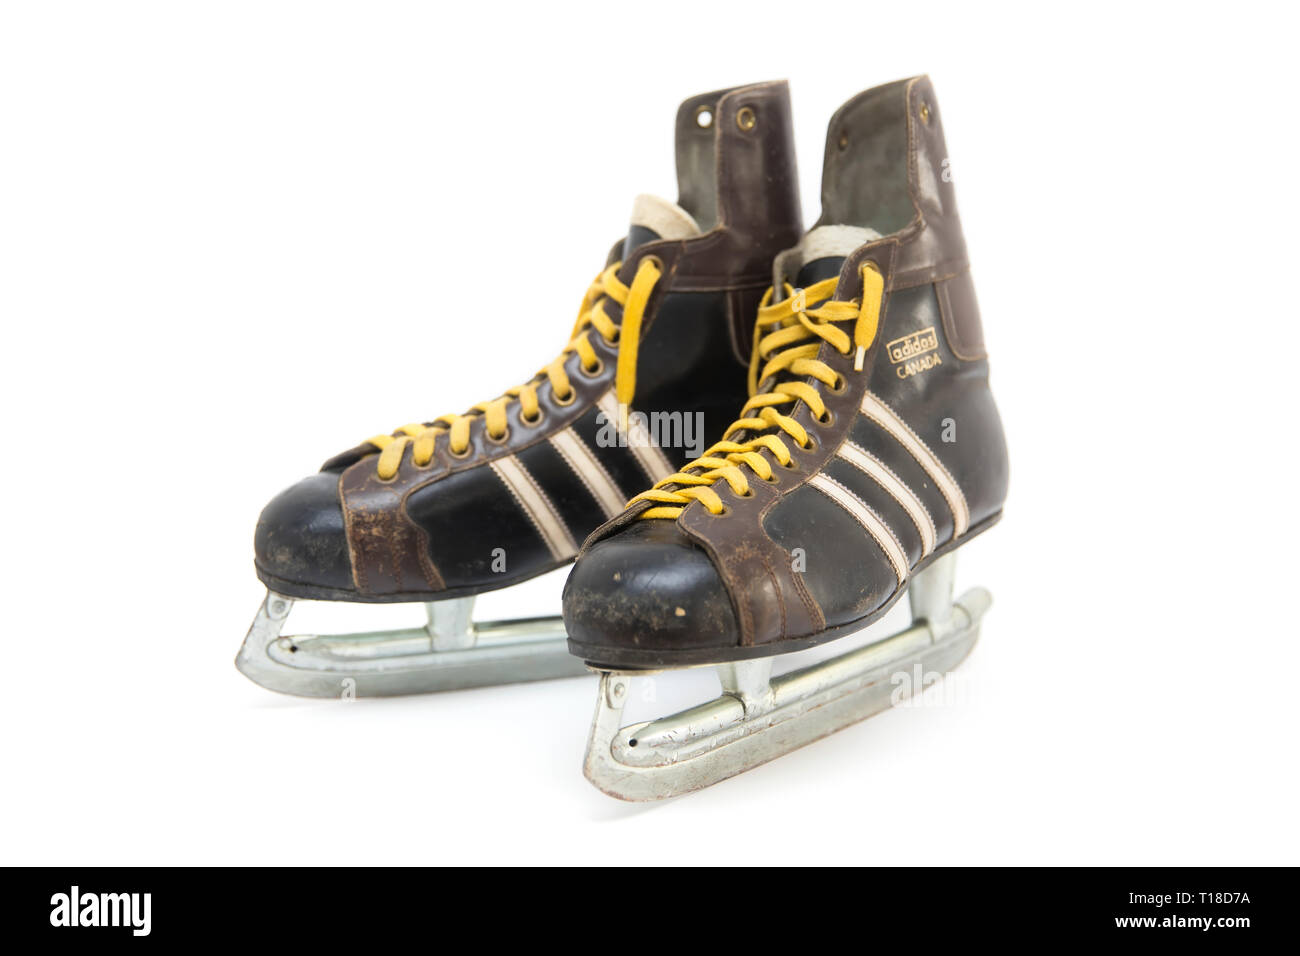 BELGRADE, SERBIE - 16 janvier 2019 : Vintage adidas chaussures de skate à Belgrade, en Serbie. Adi Dassler fait sa première chaussures de sport dans son atelier près de Nure Banque D'Images